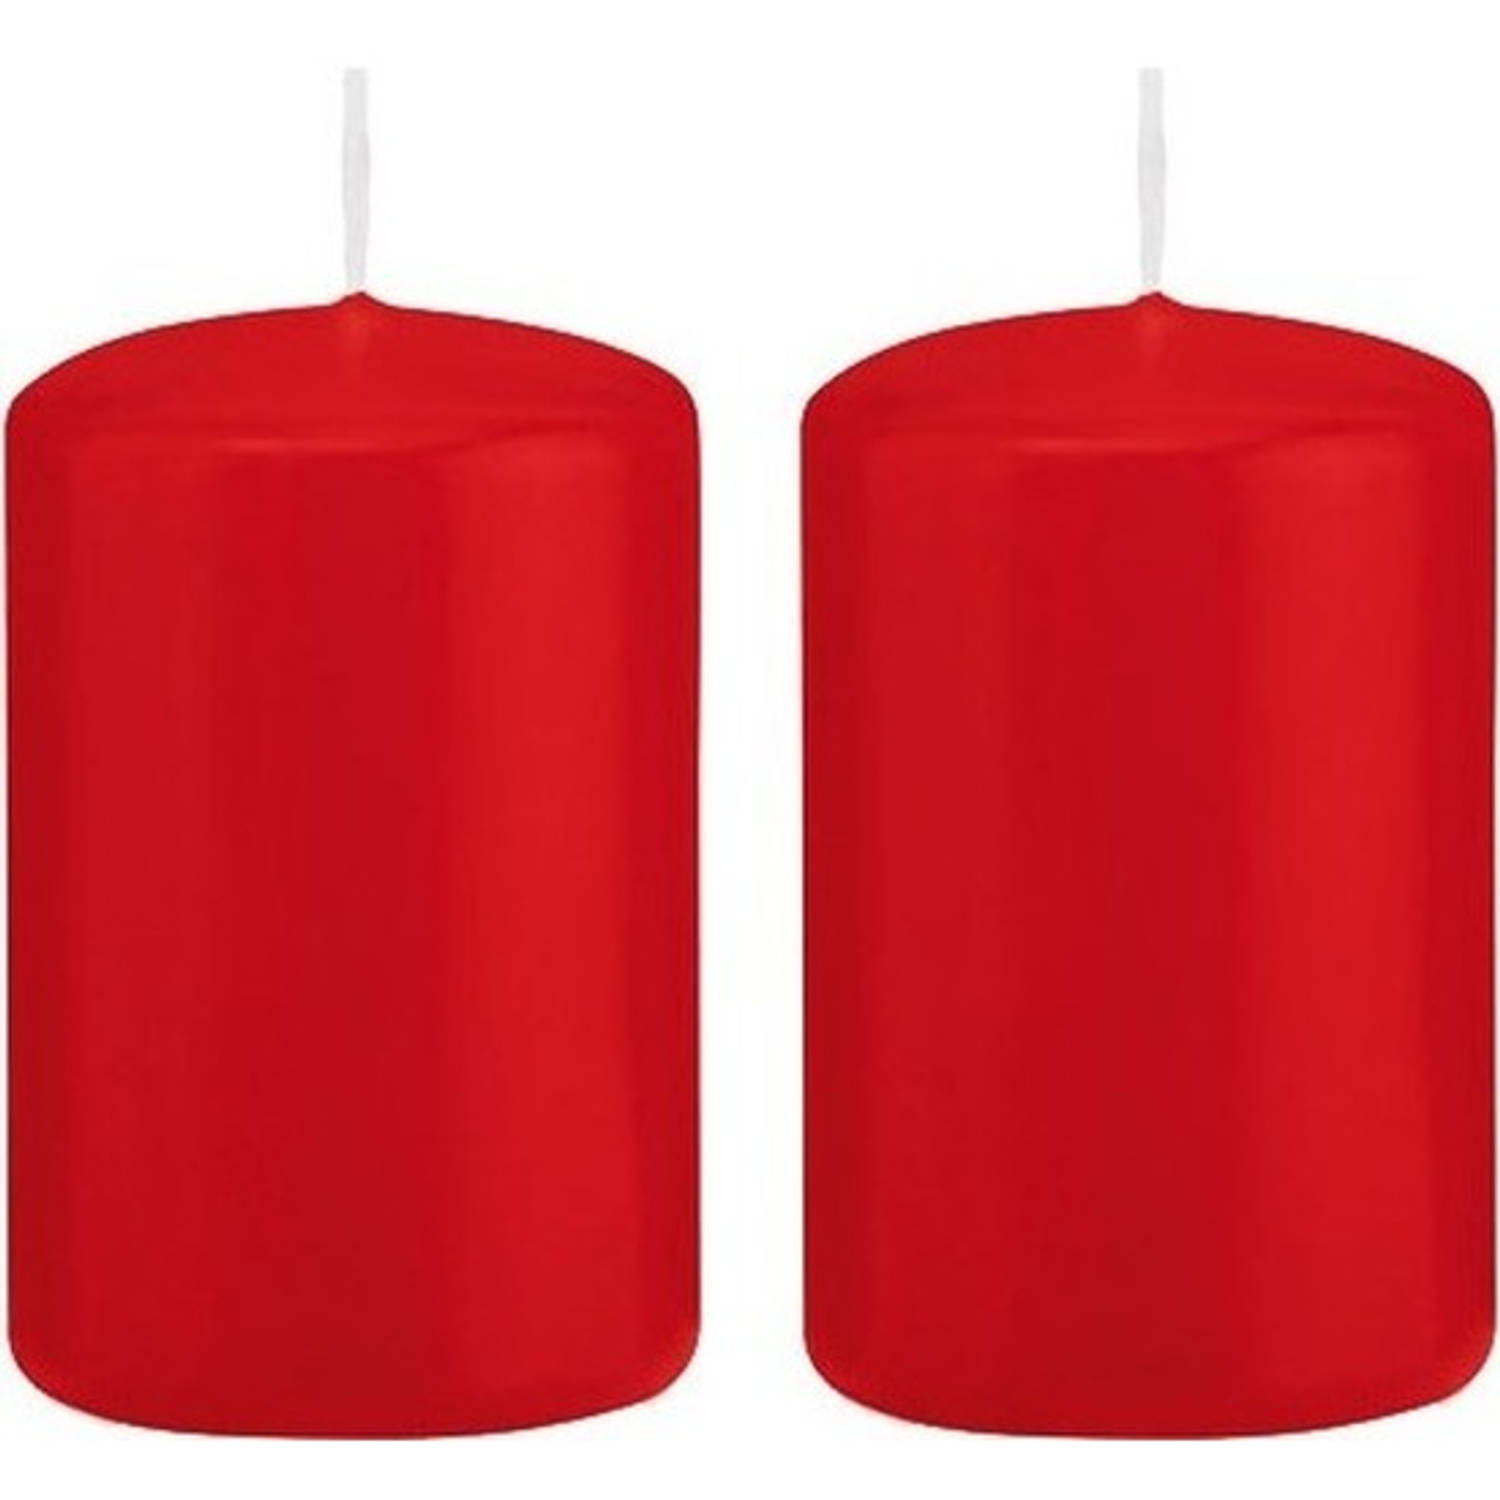 Trend Candles 2x Rode Cilinderkaarsen/stompkaarsen 5 X 8 Cm 18 Branduren - Geurloze Kaarsen - Woondecoraties - Rood